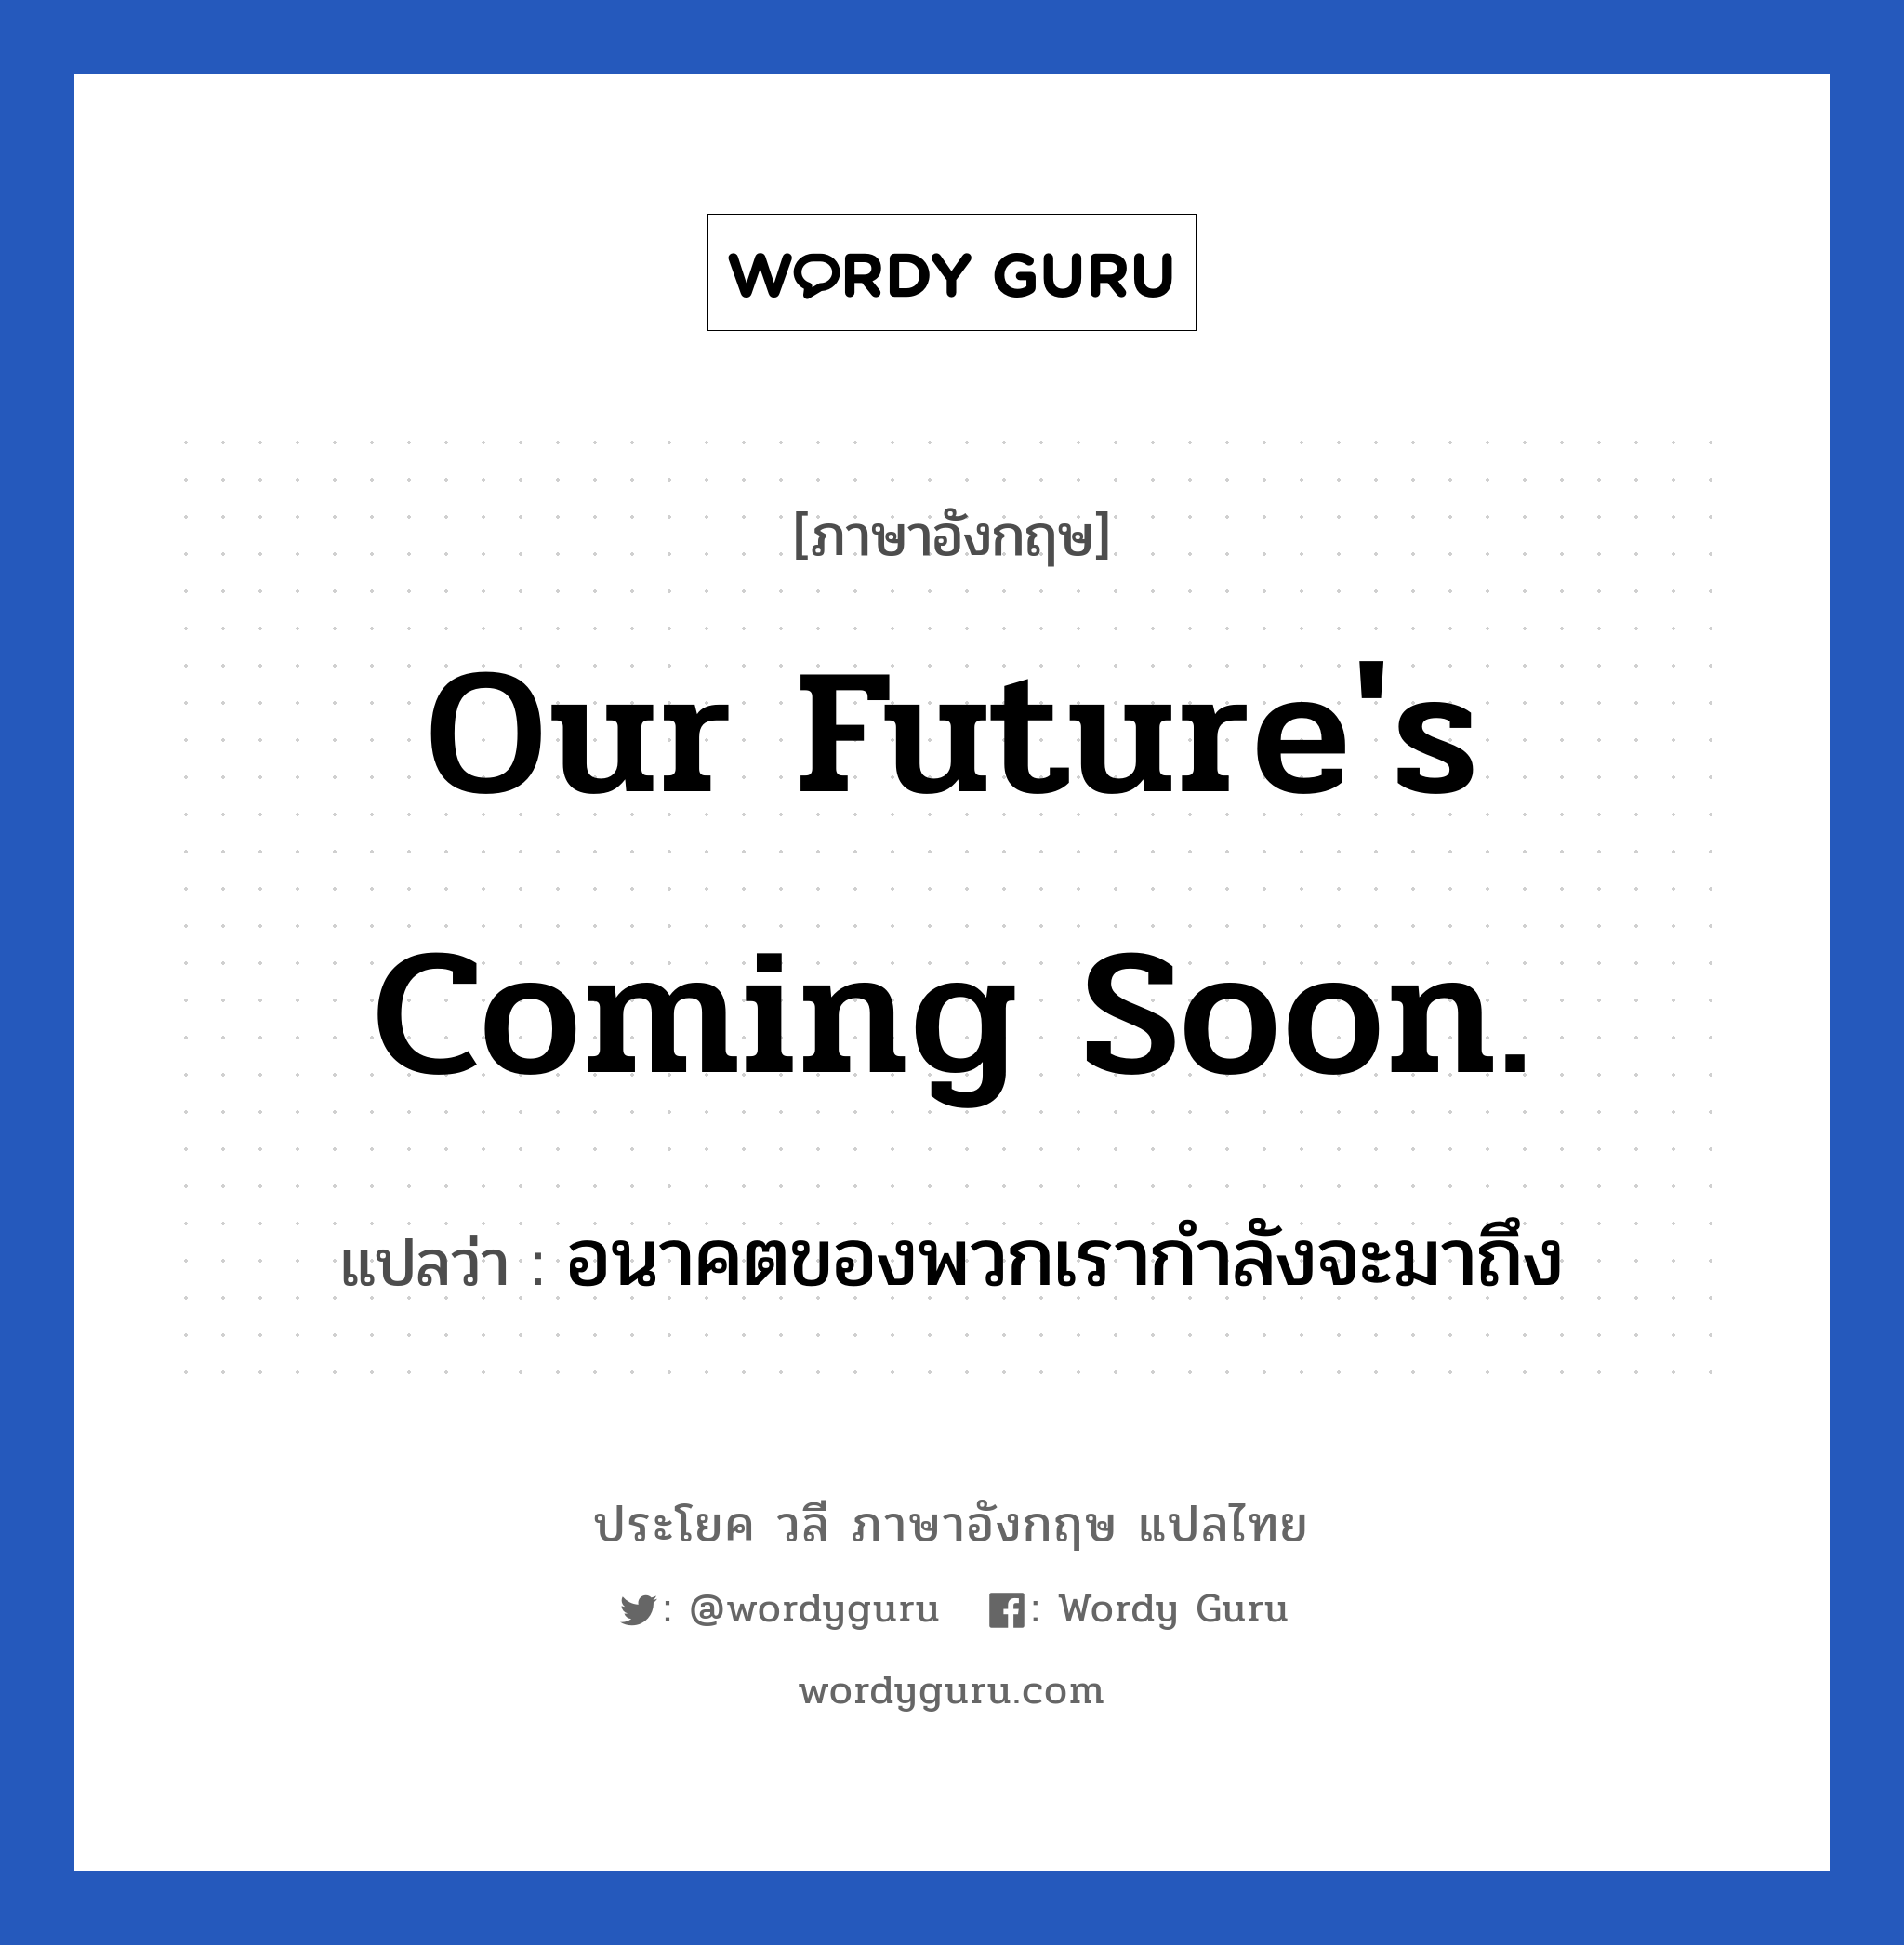 อนาคตของพวกเรากำลังจะมาถึง ภาษาอังกฤษ?, วลีภาษาอังกฤษ อนาคตของพวกเรากำลังจะมาถึง แปลว่า Our future's coming soon.